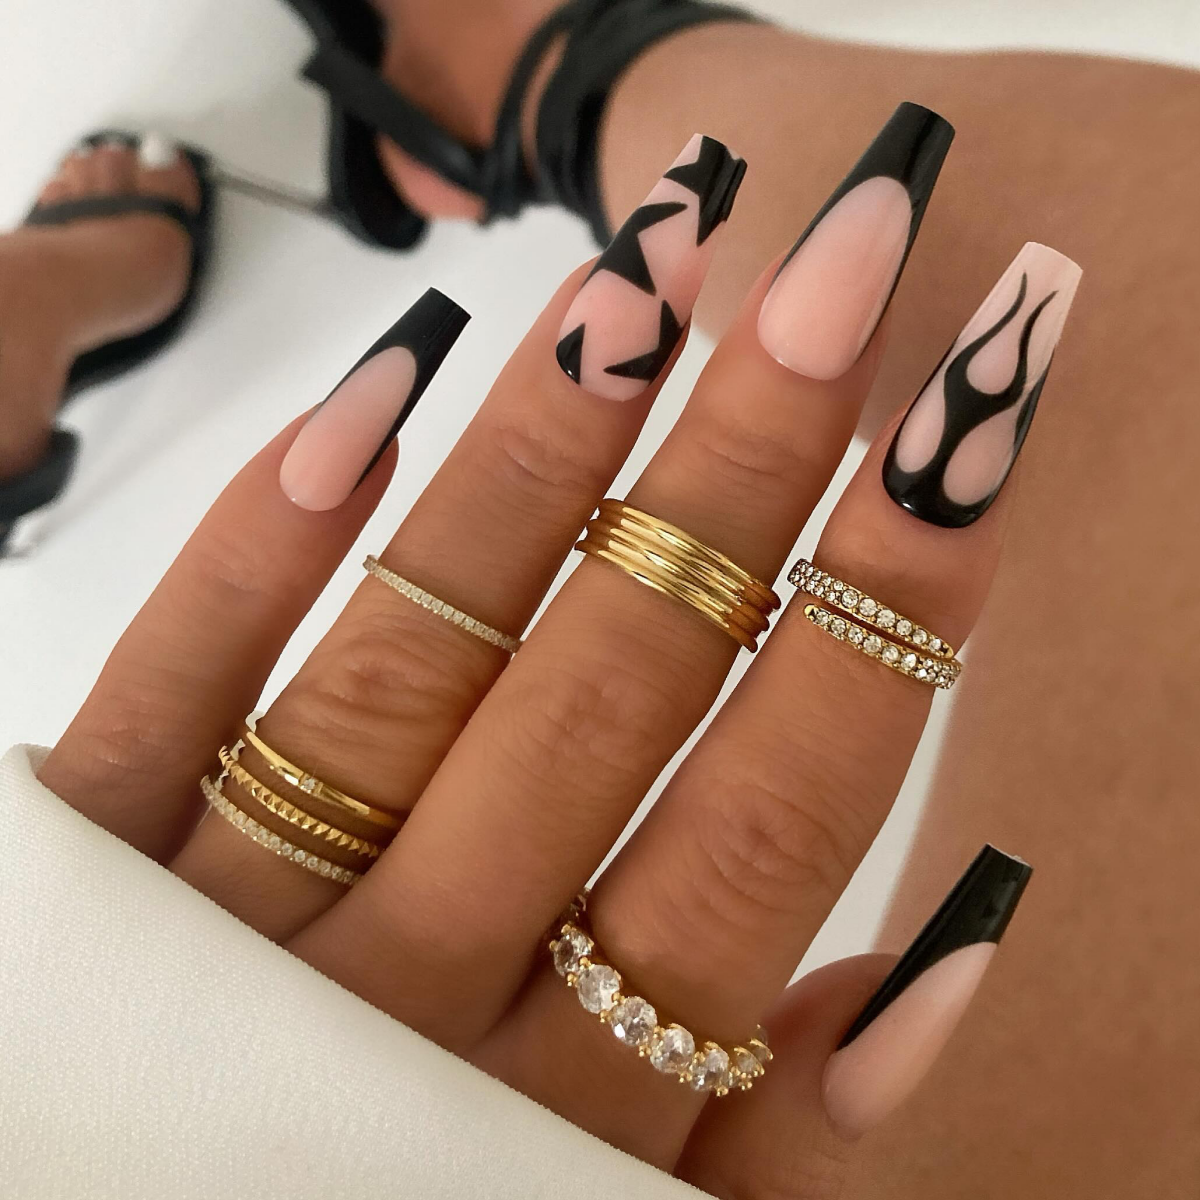 rockstar nail design in black